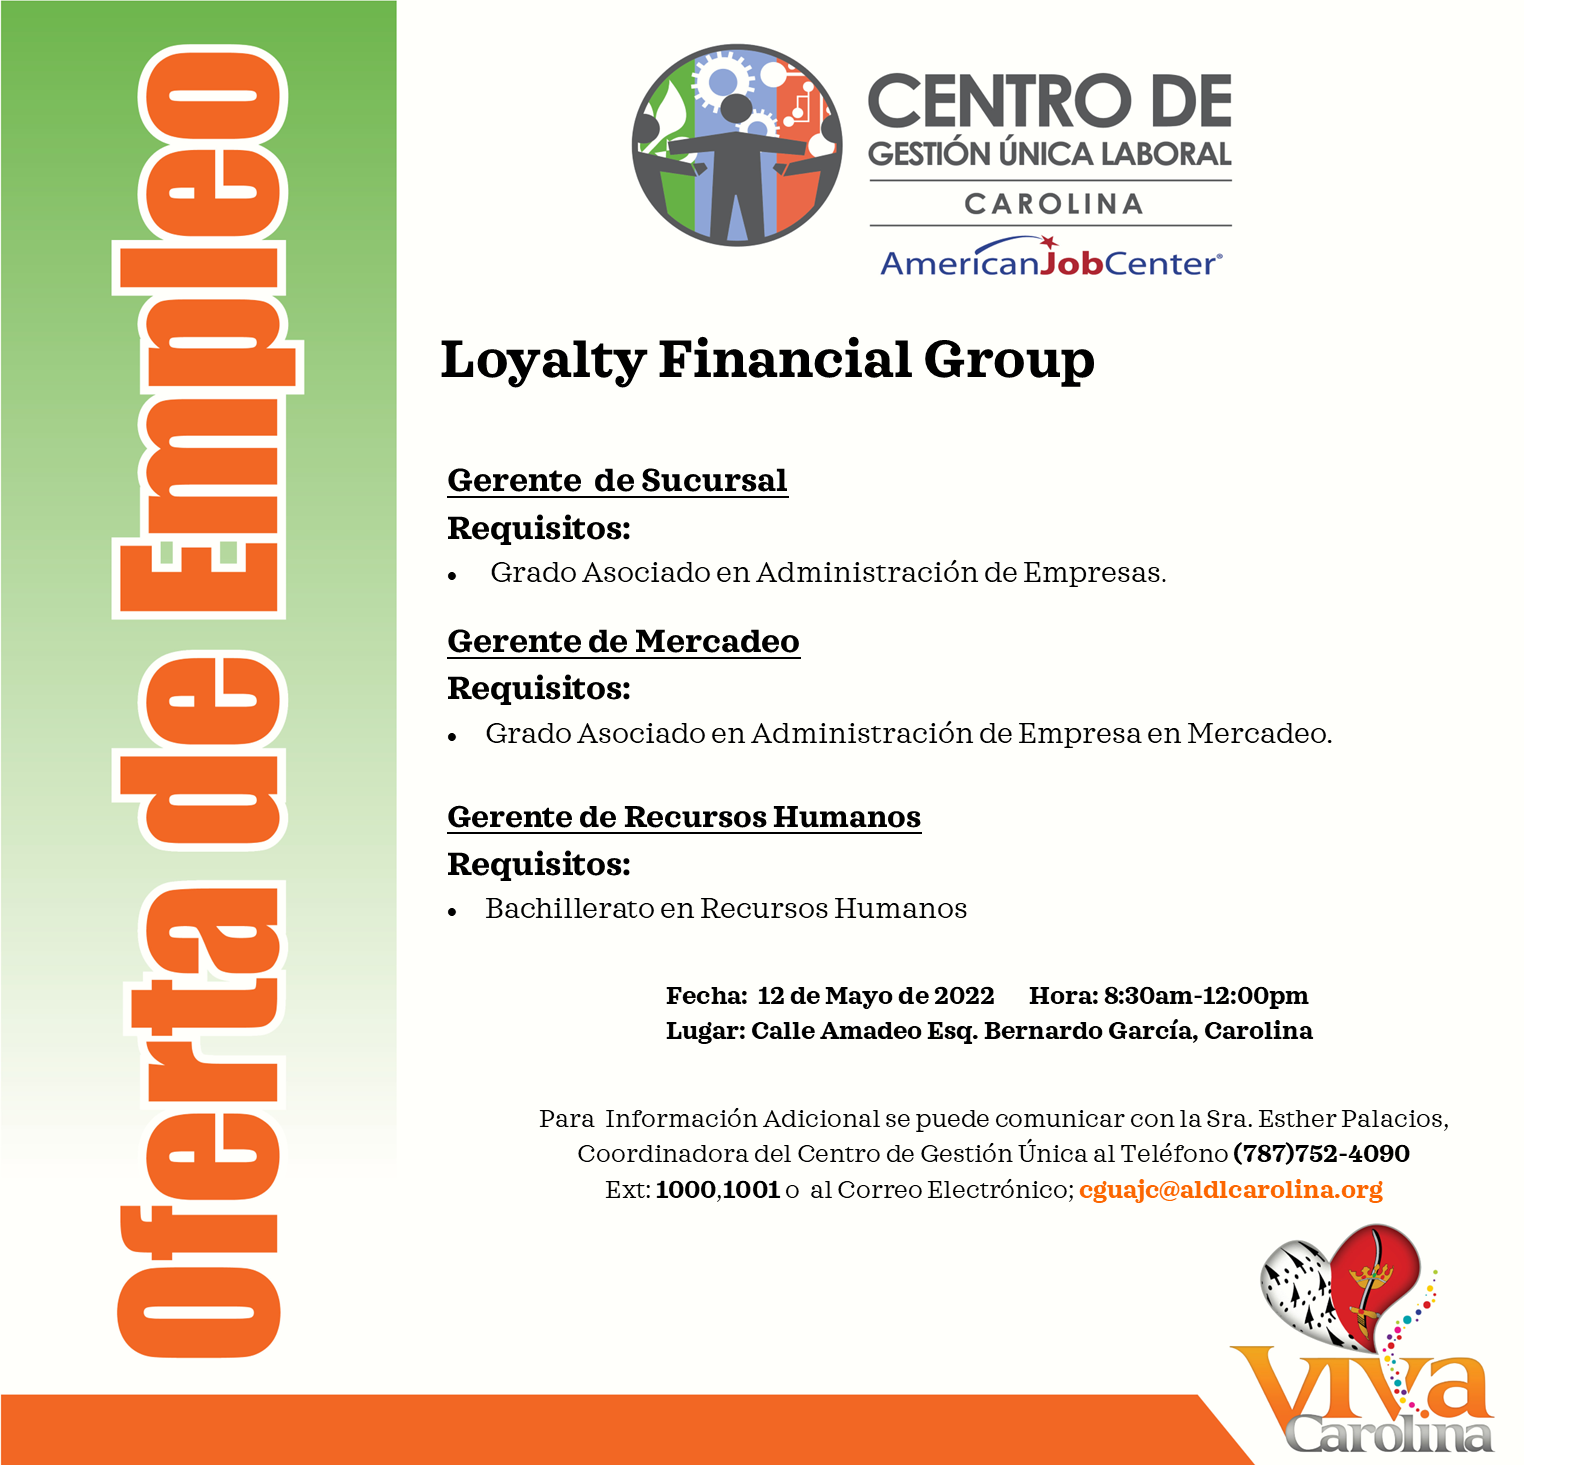 Oferta de Empleo Loyalty Financial Group